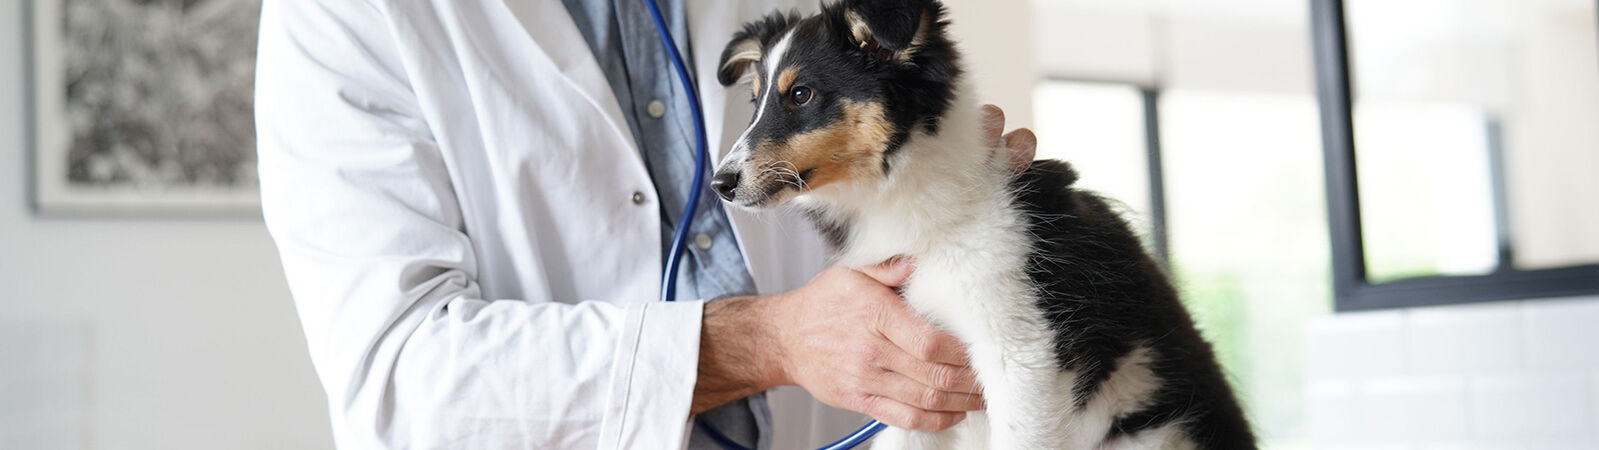 Ein Tierarzt horcht mit einem Stethoskop einen jungen Hund ab.